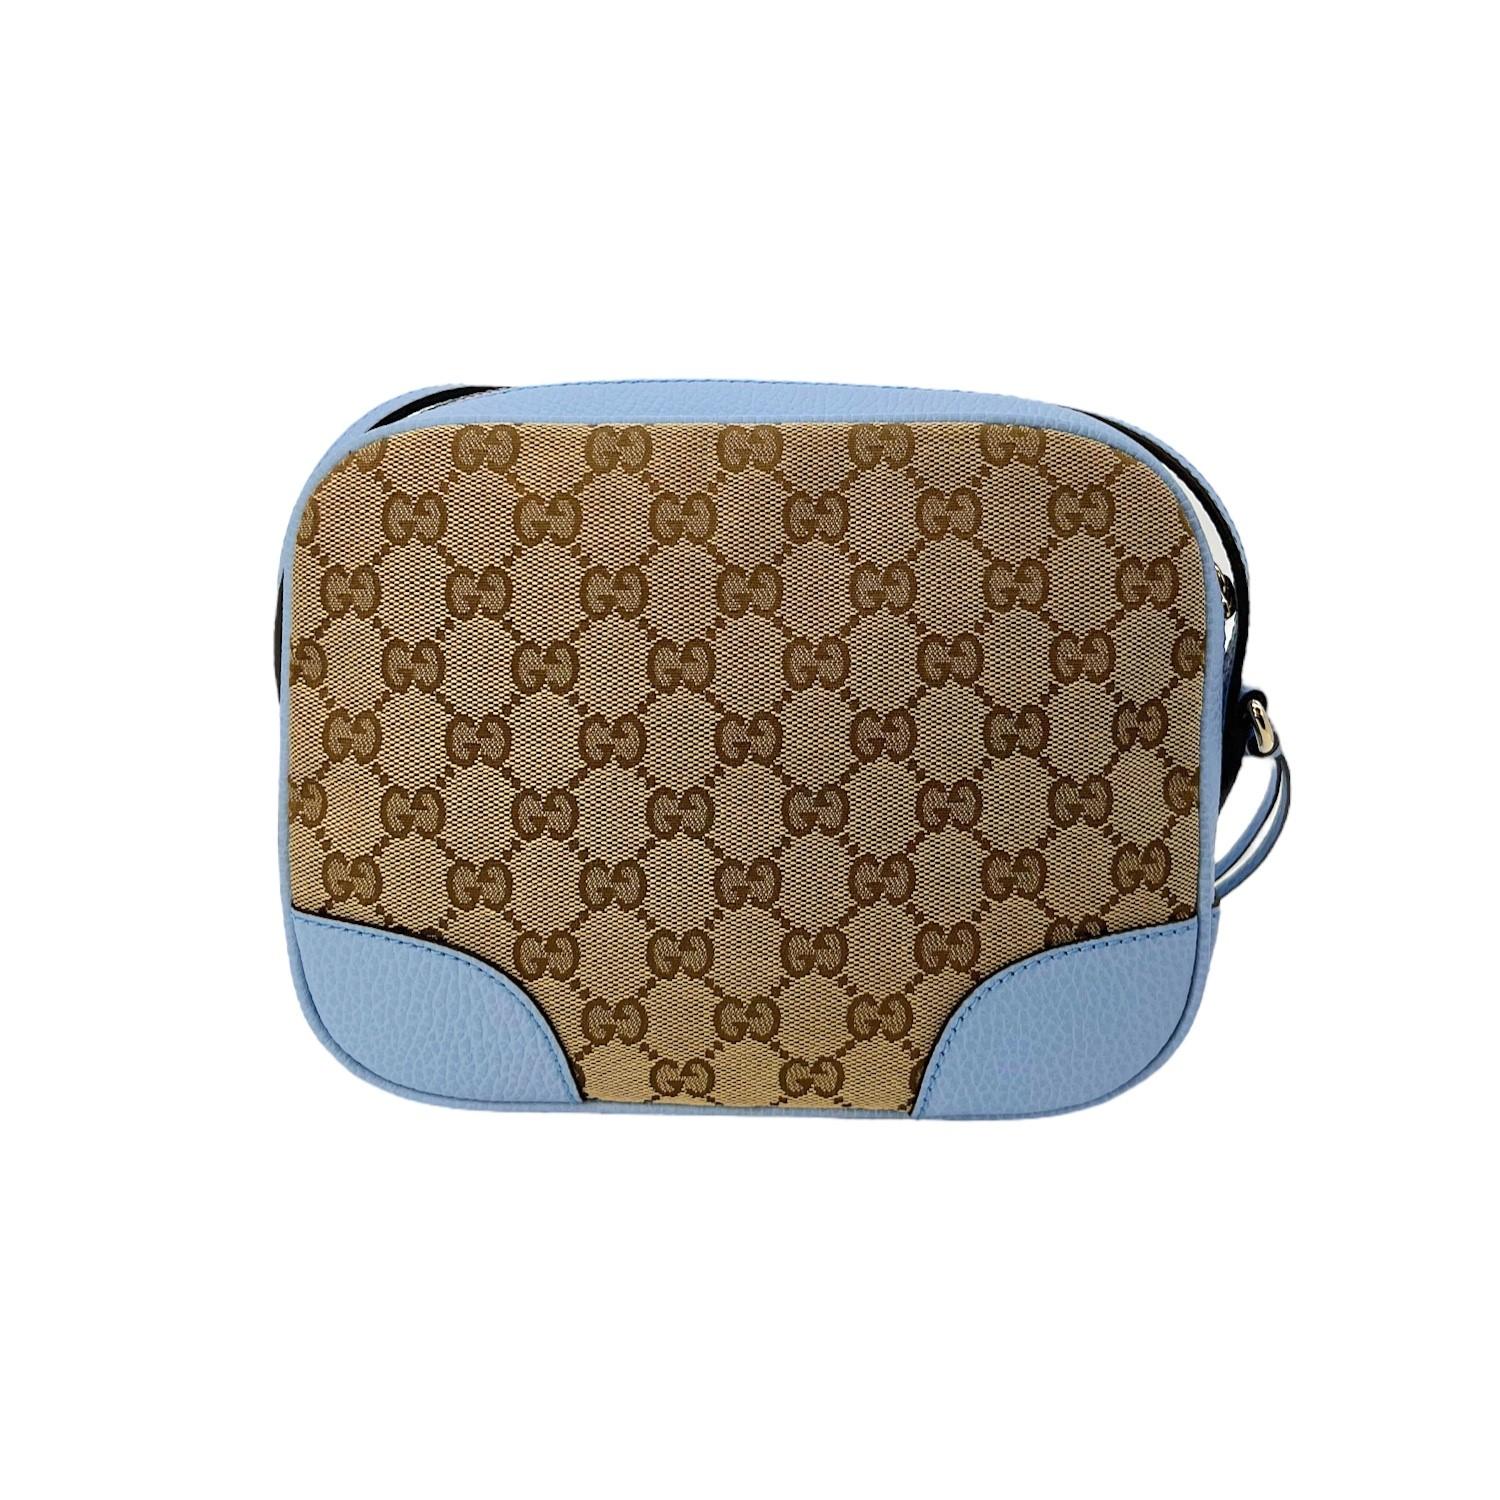 Diese Gucci GG Canvas Mini Bree Crossbody Bag wurde in Italien hergestellt und besteht aus dem klassischen Gucci GG Canvas mit Lederbesatz und goldfarbenen Beschlägen. Sie hat einen flachen, verstellbaren Schulterriemen aus Leder. Sie hat einen